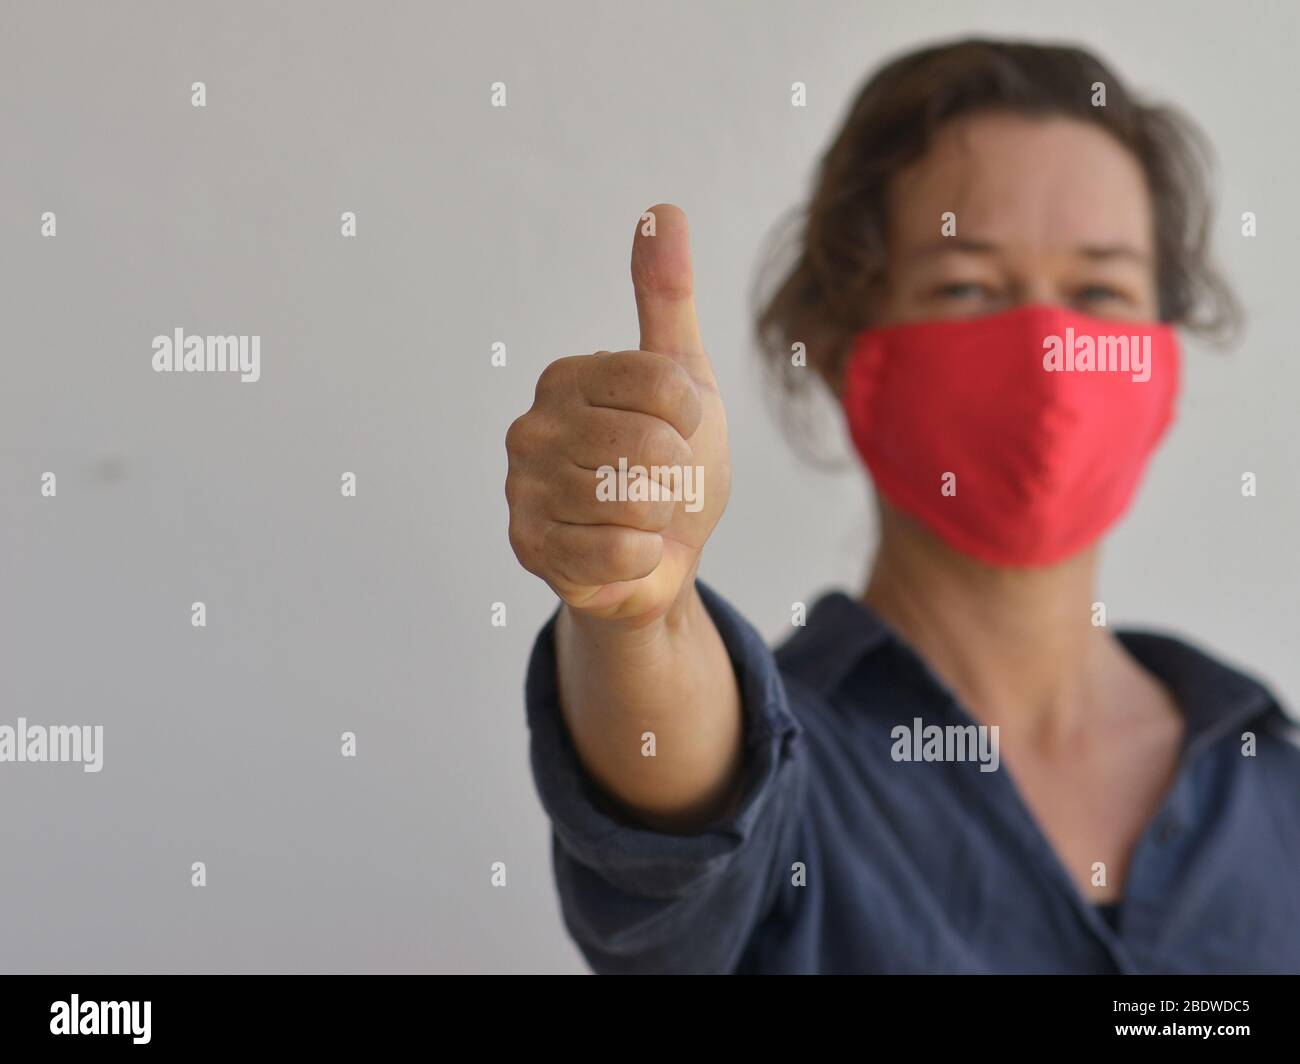 Kaukasierin trägt eine hausgemachte DIY Gesichtsmaske und gibt die Daumen-up-Zeichen während der 2019-20 Corona-Virus Pandemie. Stockfoto